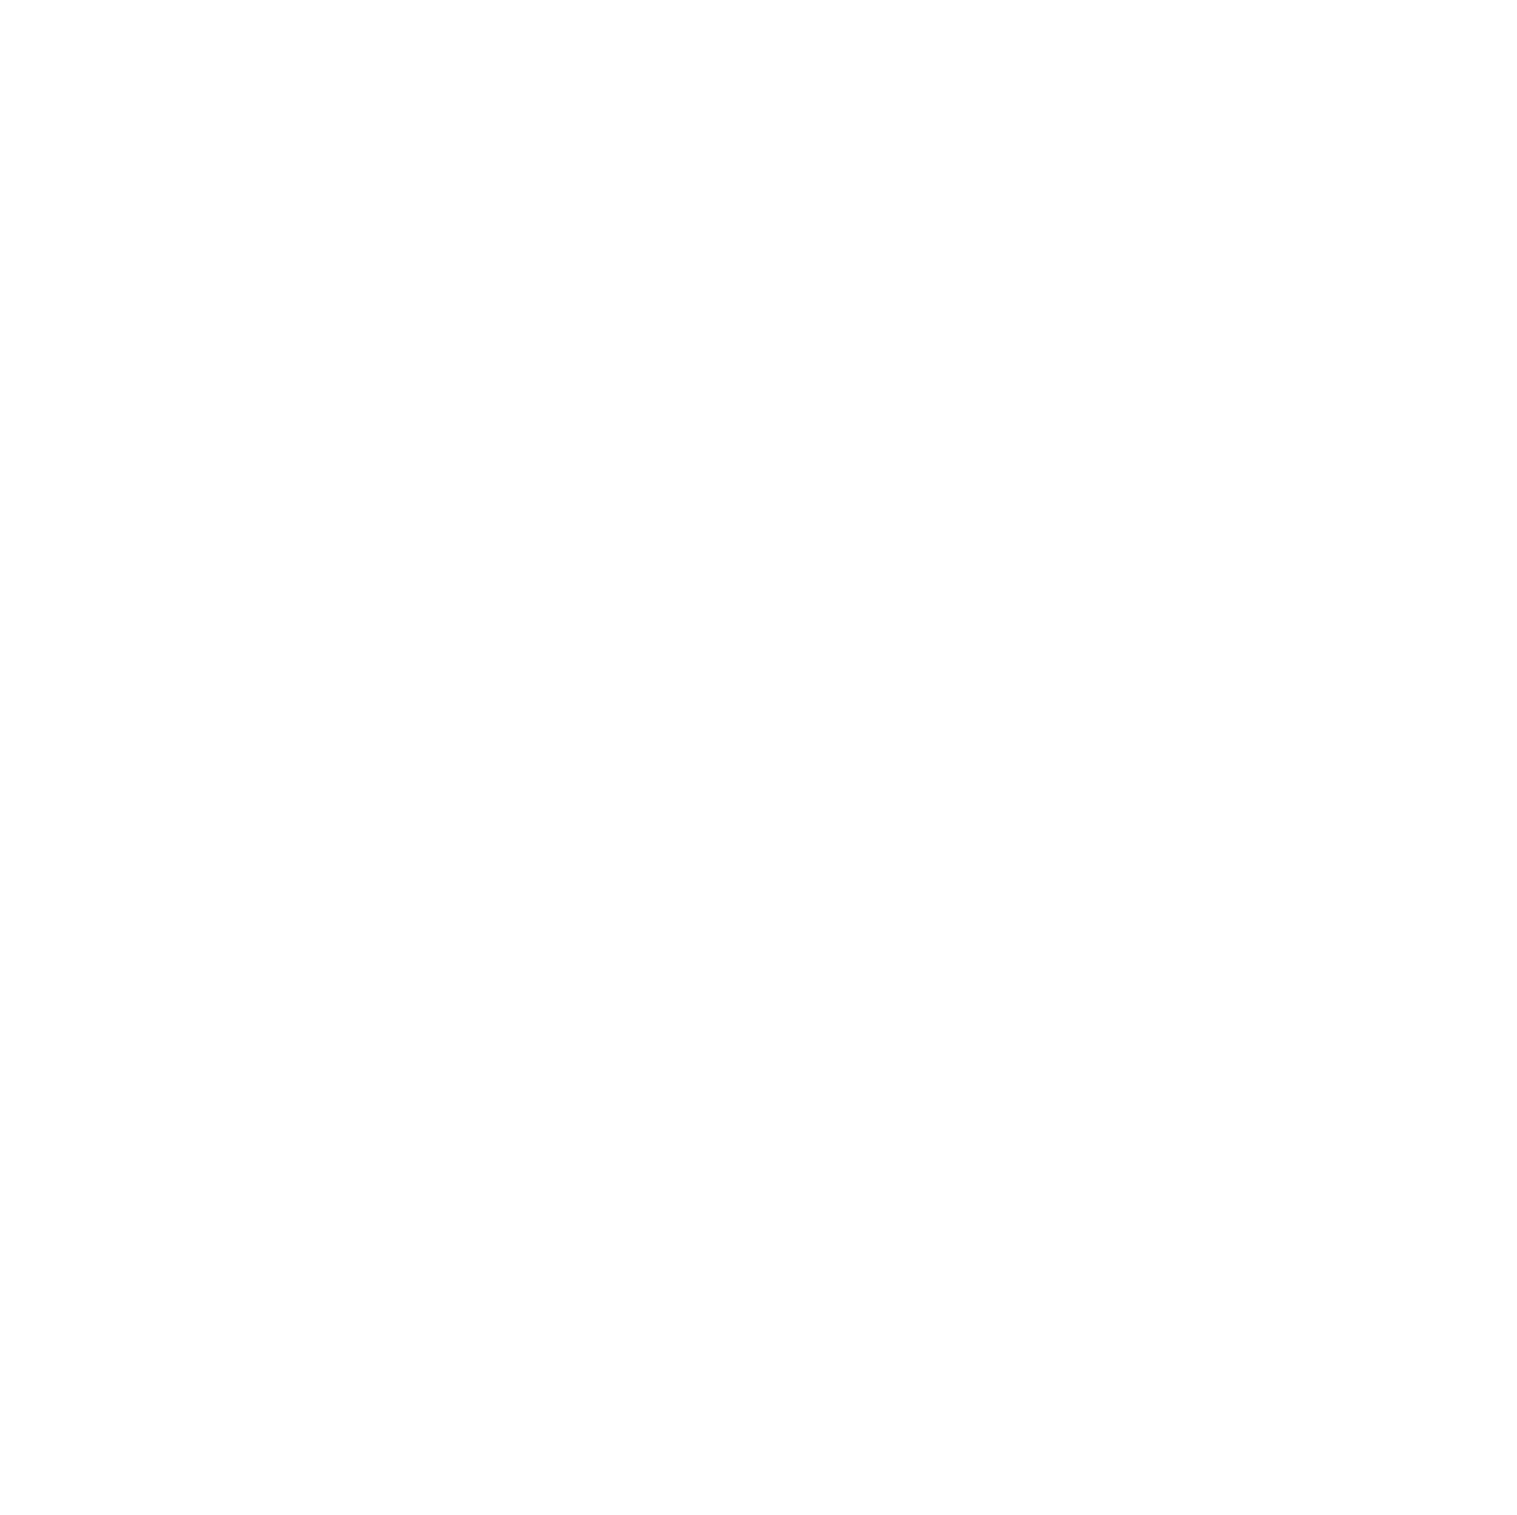 Stantec logo for dark backgrounds (transparent PNG)